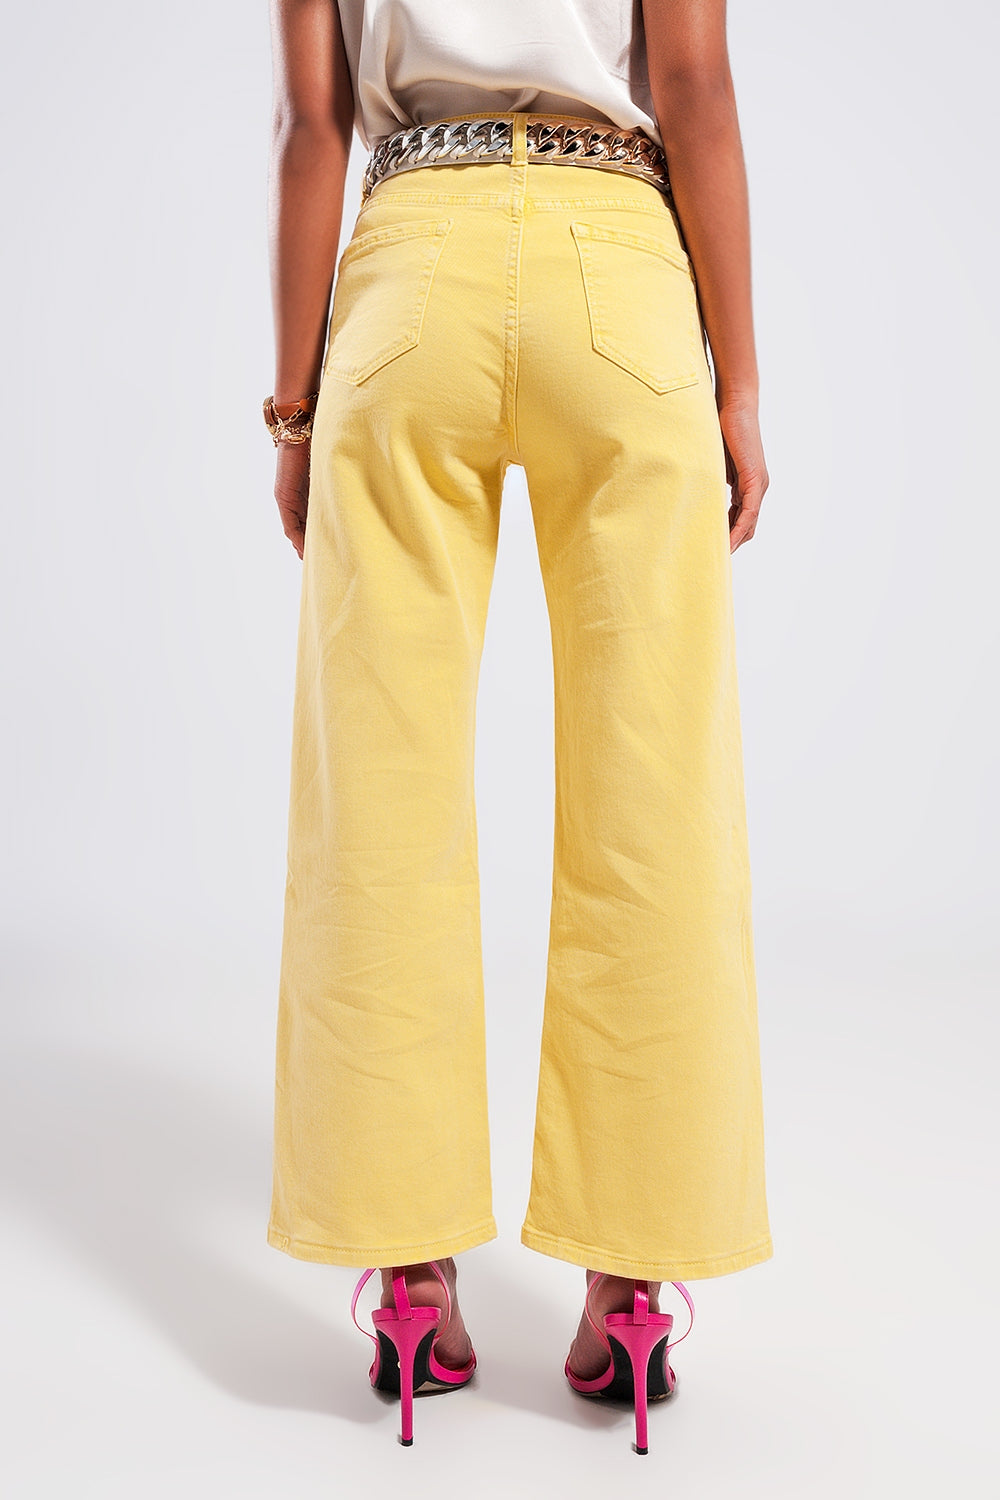 Jeans a fondo ampio giallo sole